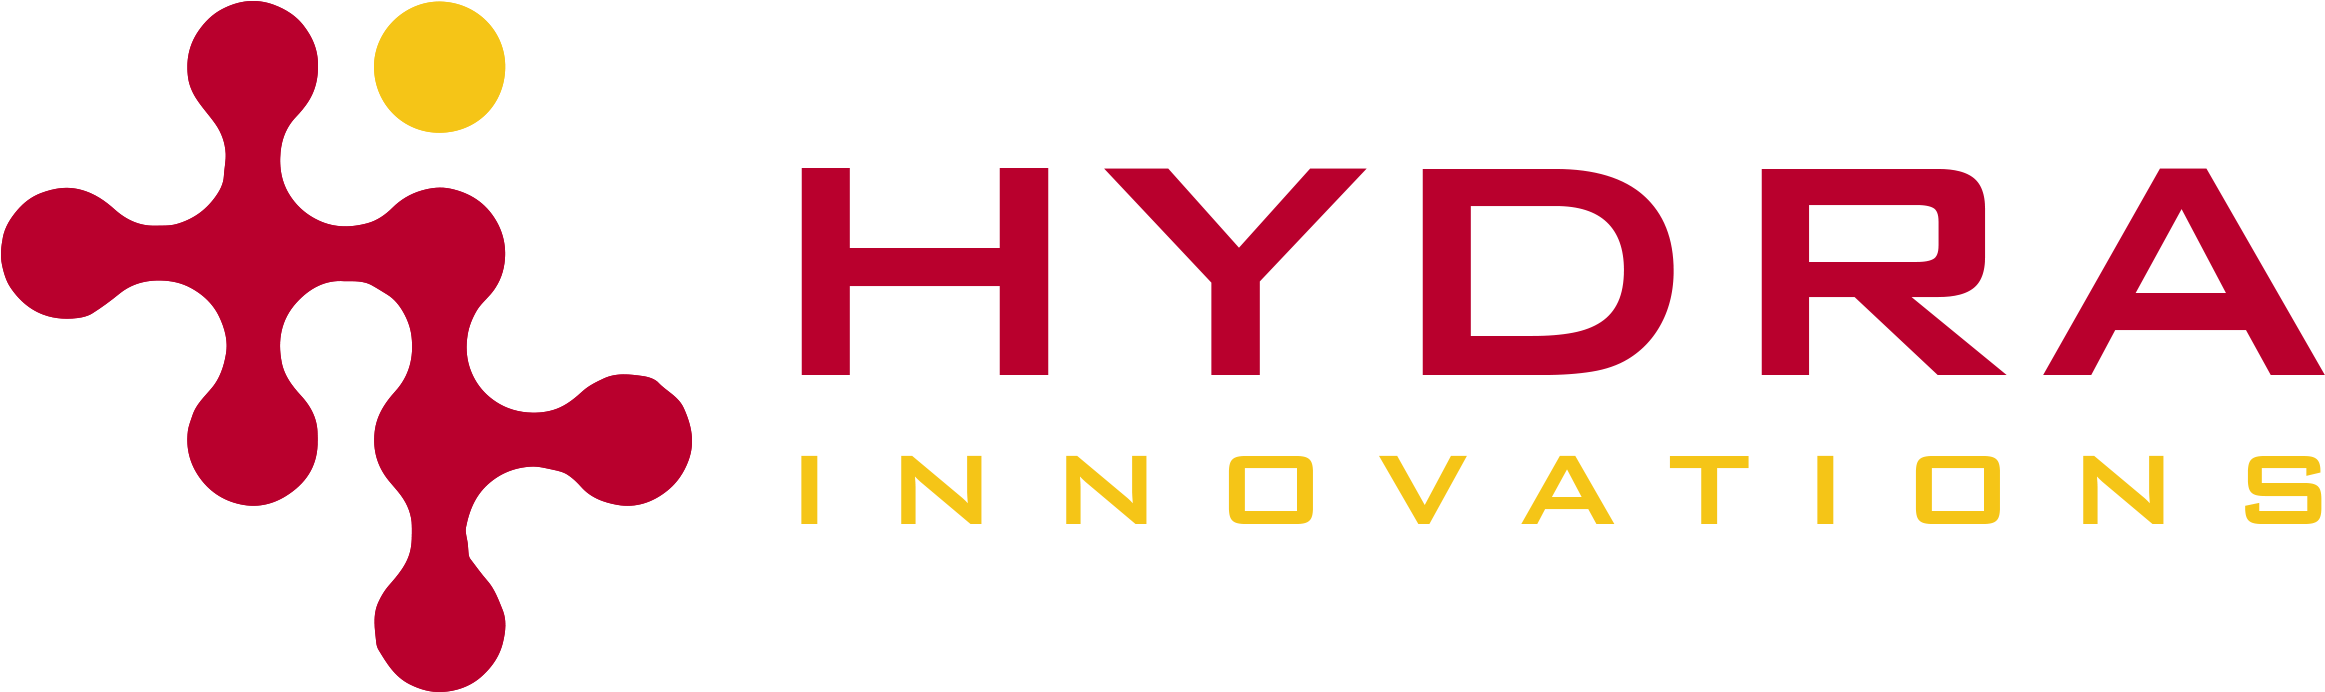 Hydra logo PNG высококачественный образ